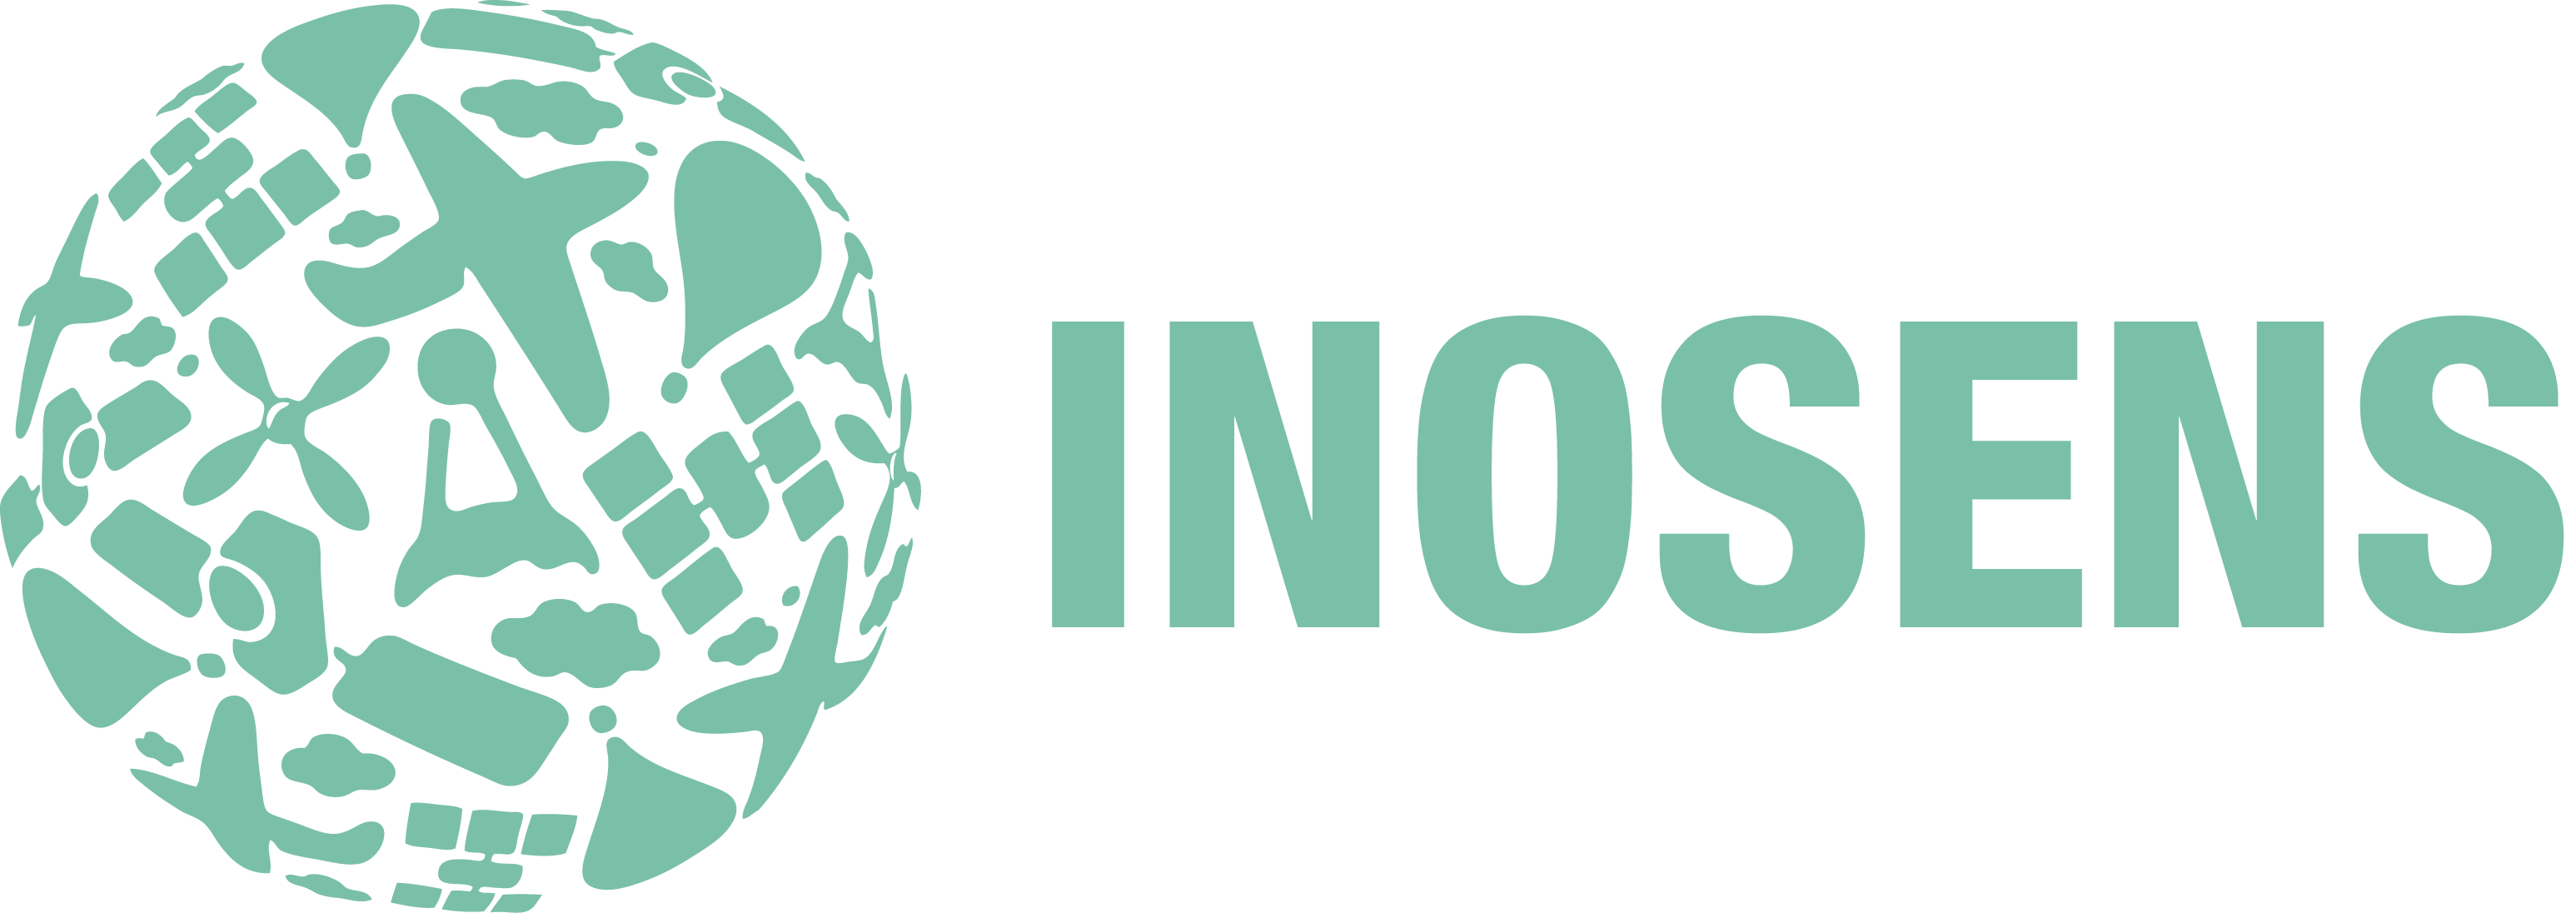 InoSens